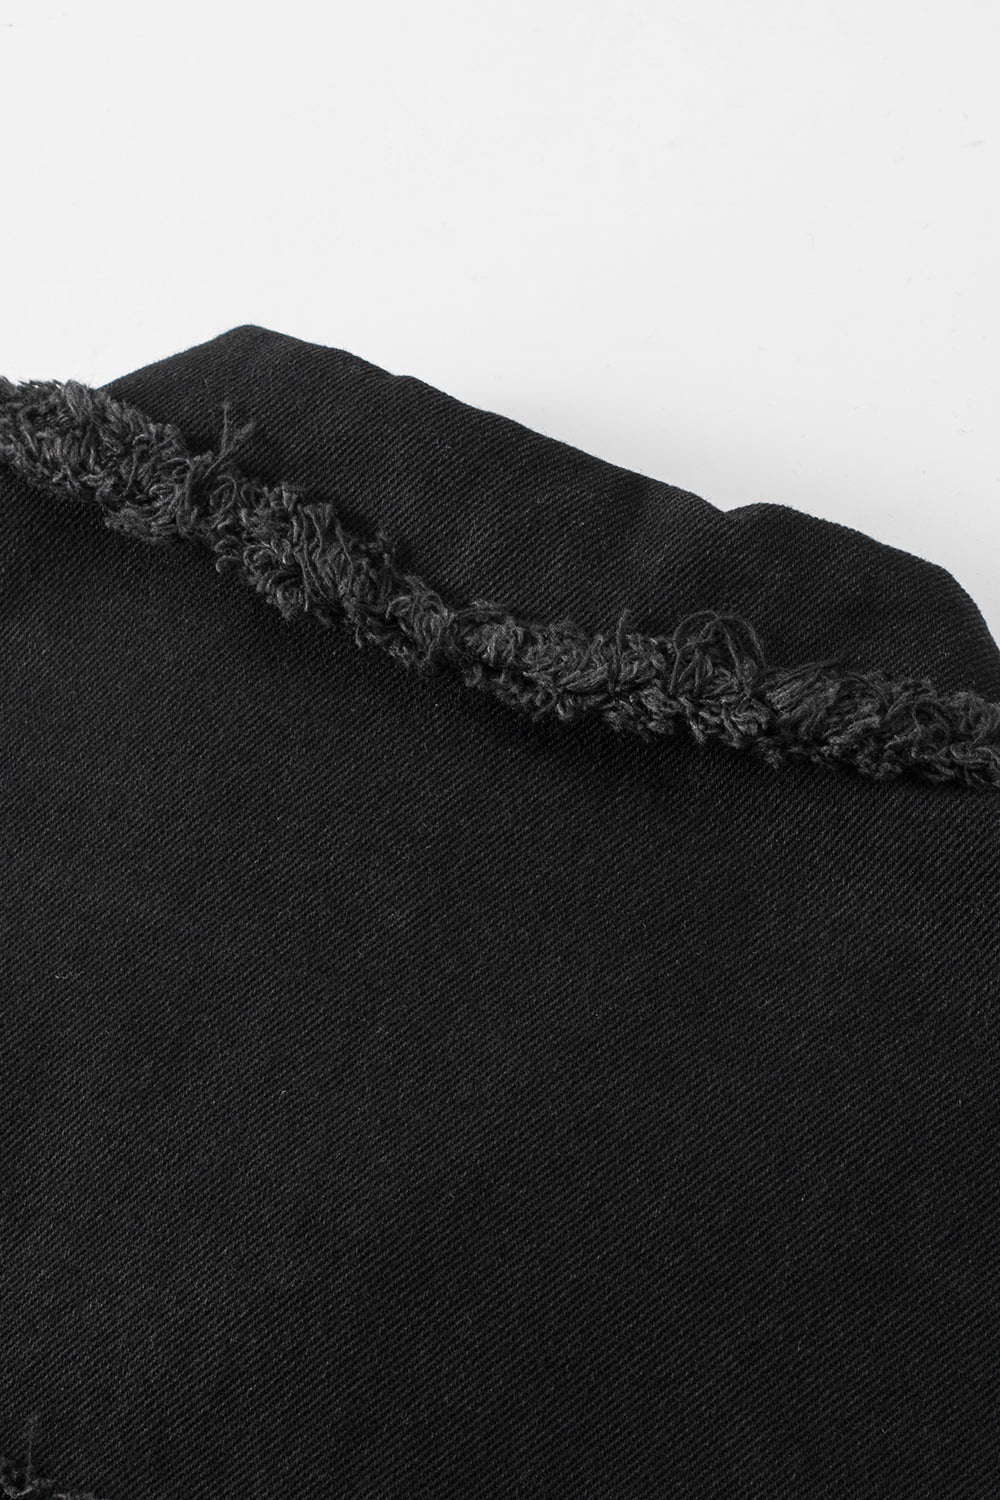 Schwarze Jeansjacke mit unbearbeitetem Saum und Taschen an den Ärmeln und Pailletten